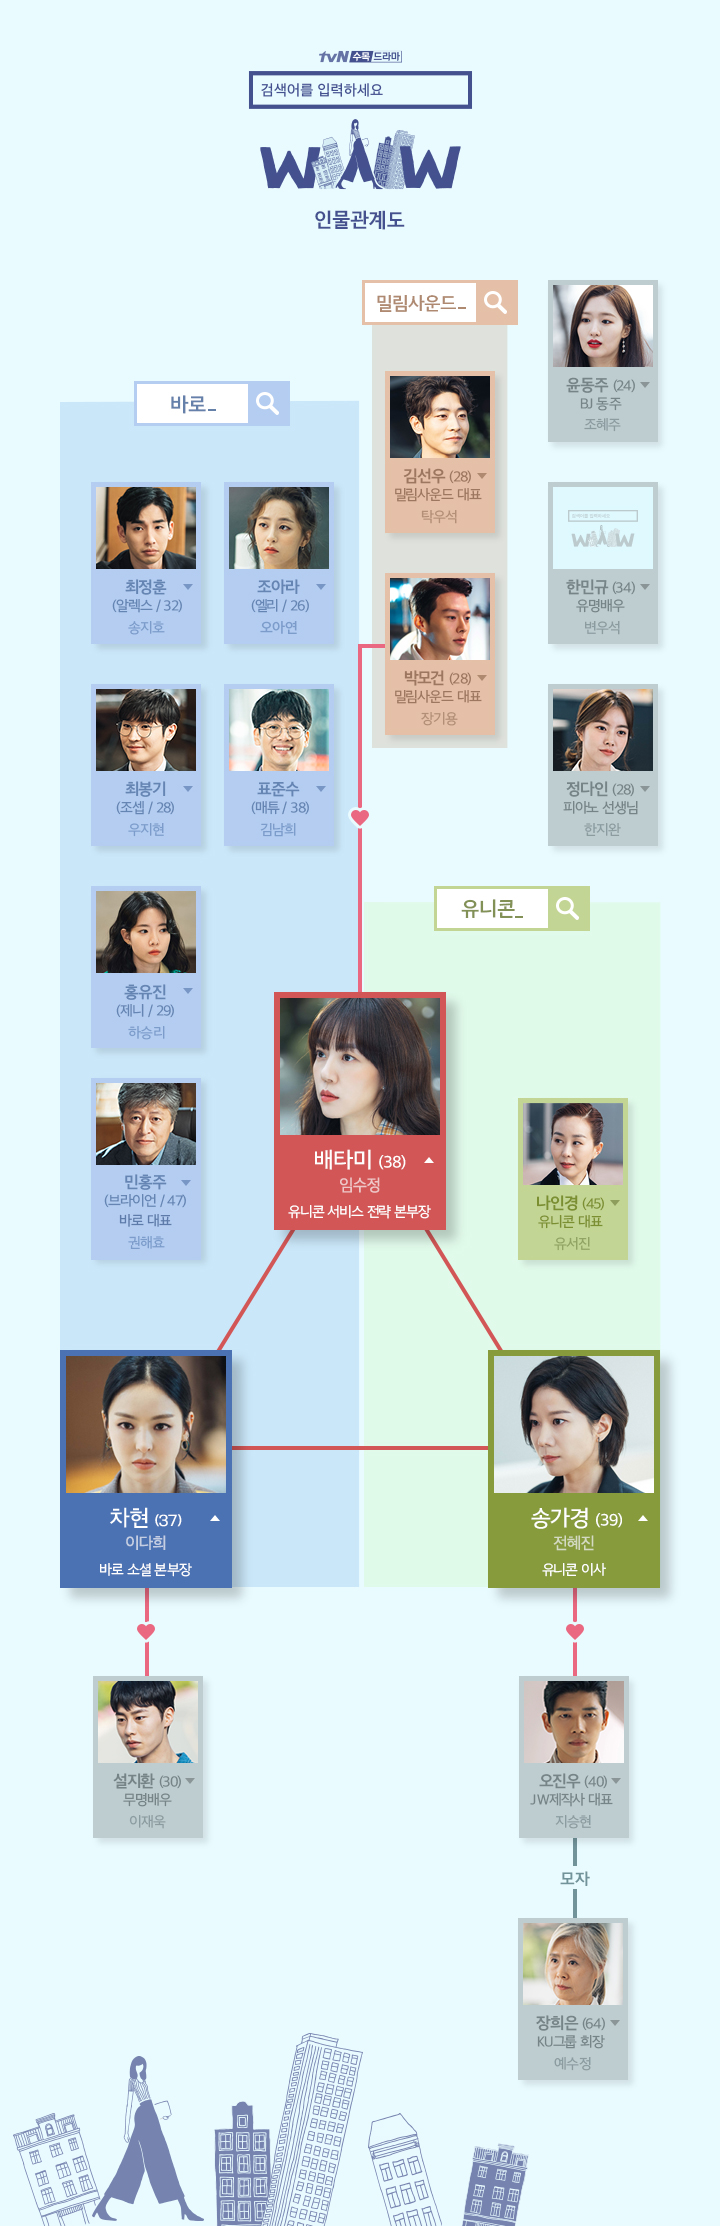 tvN드라마 ‘검색어를 입력하세요 WWW’ 인물관계도(출처: 공식 홈페이지)